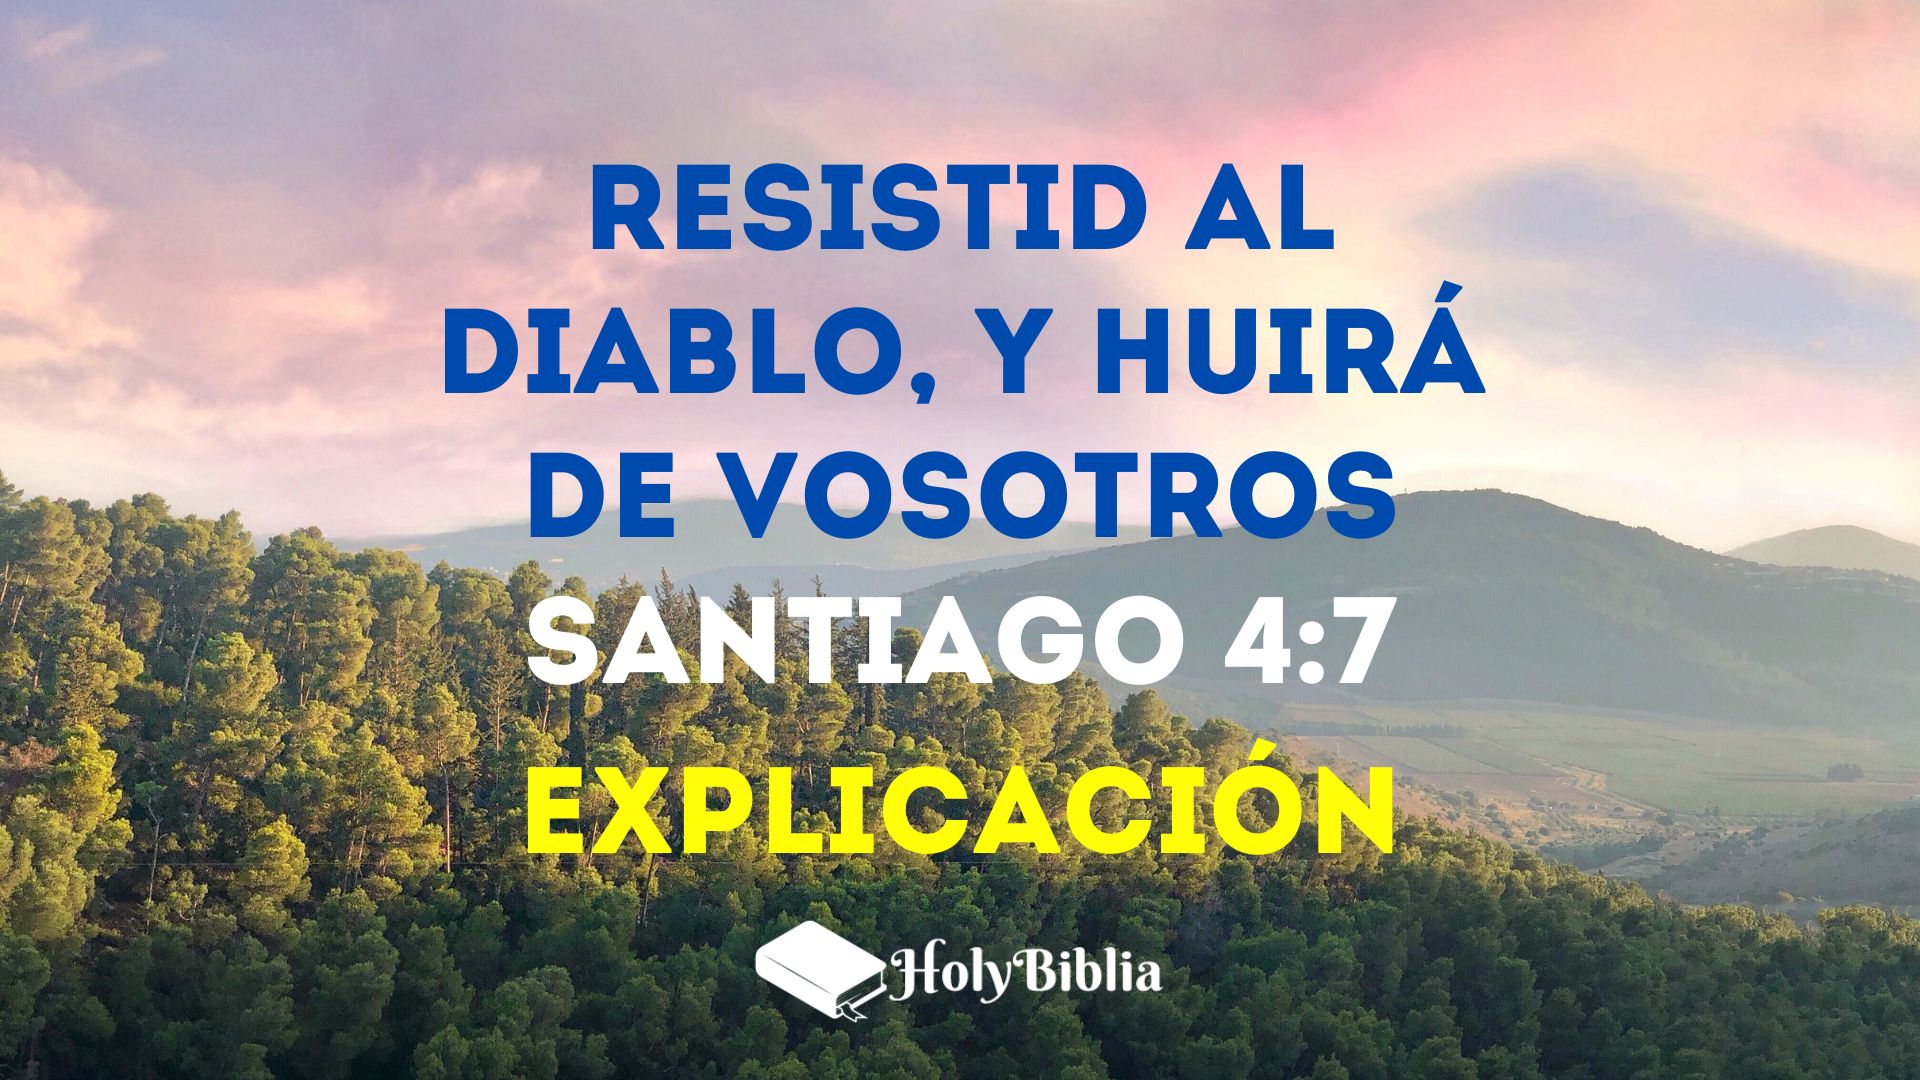 Santiago 4:7 Explicación de Resistid al diablo y huirá de vosotros